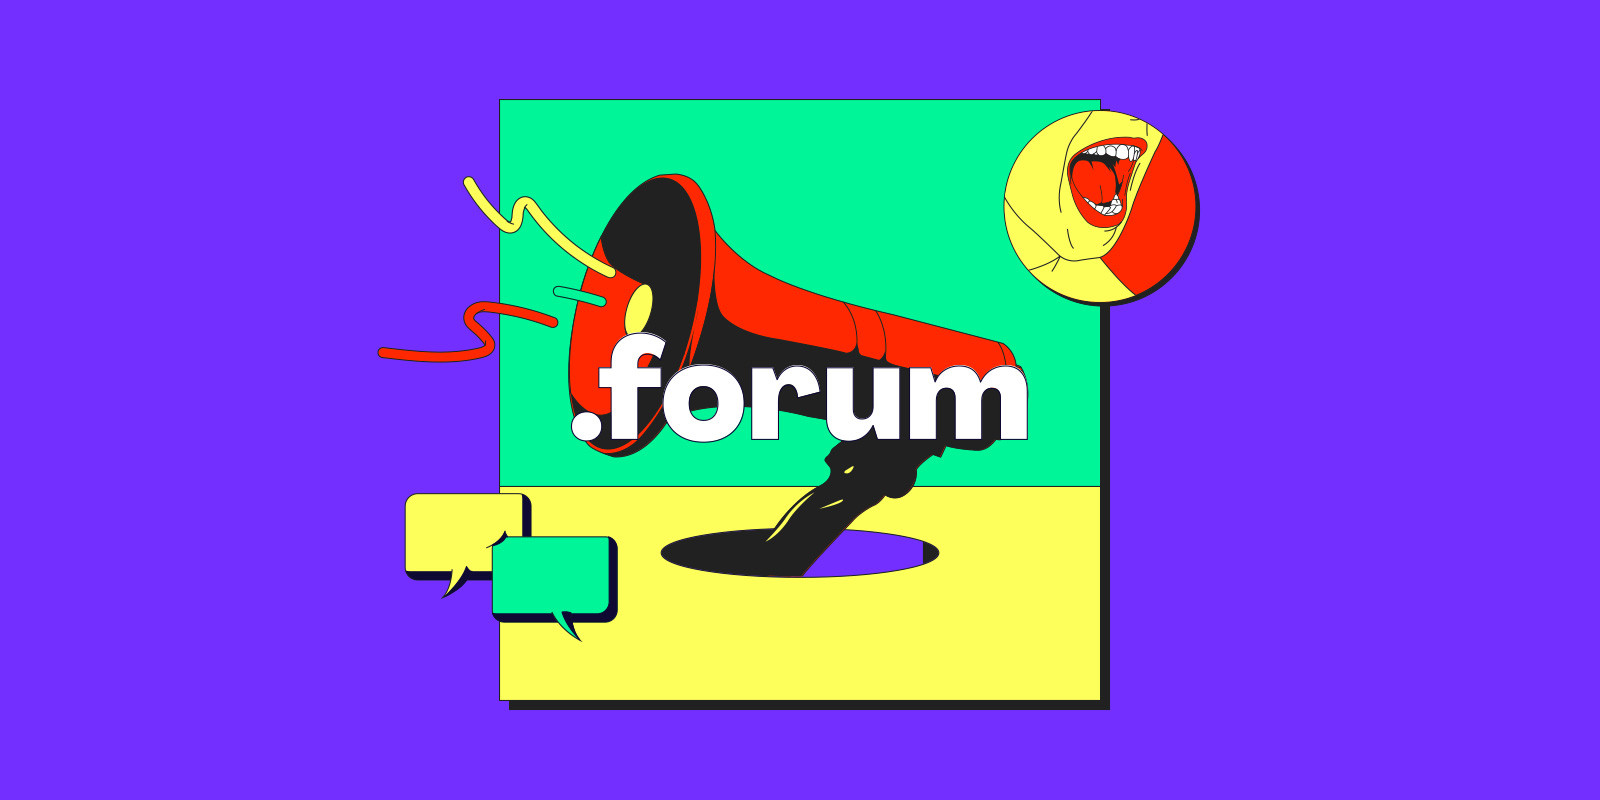 .forum 域名全面开放註册